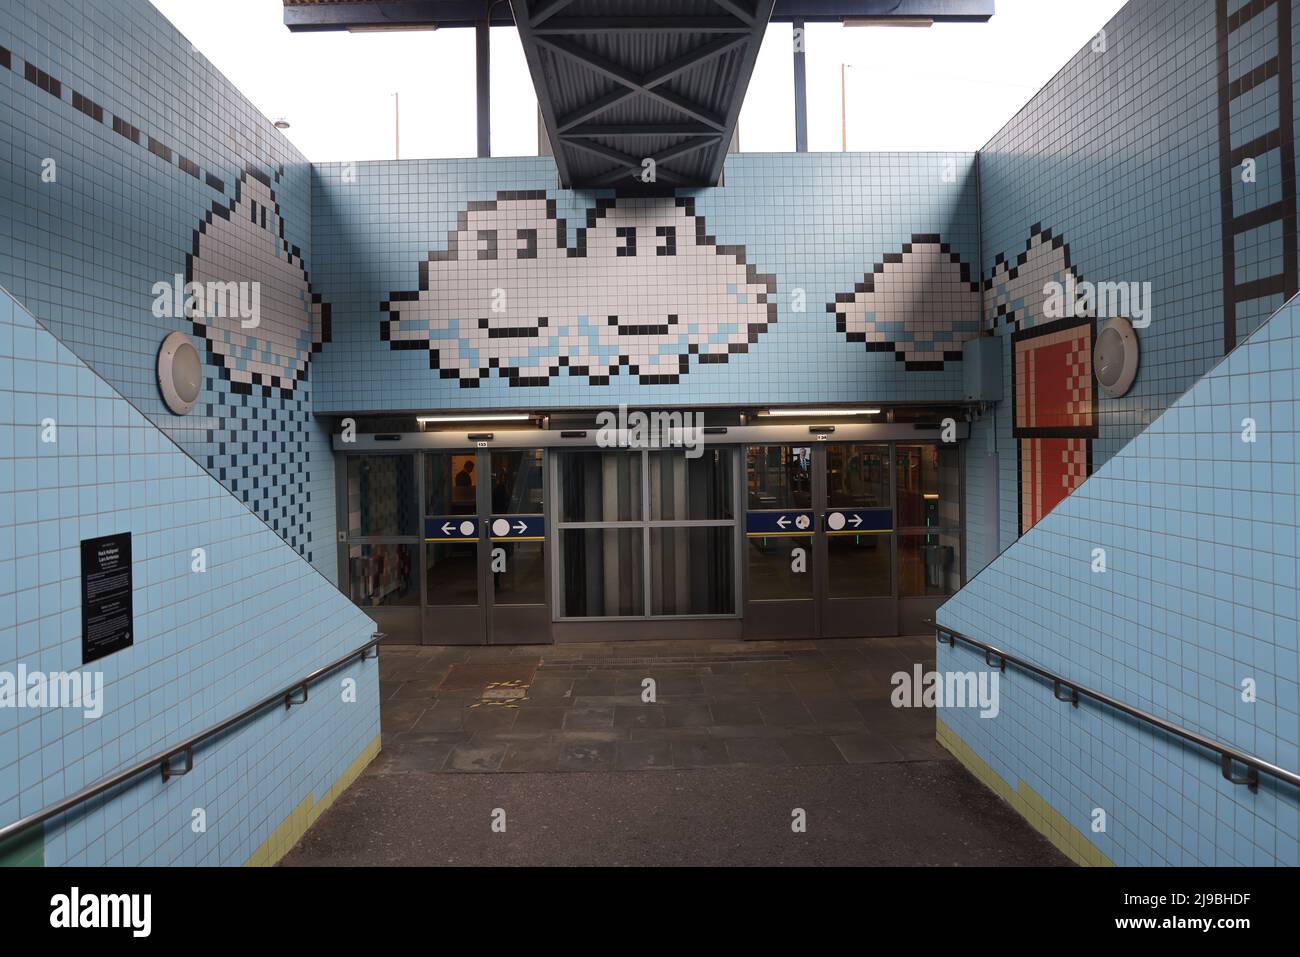 Opere d'arte pixelate di Lars Arrhenius nella stazione della metropolitana Thorildsplan (Tunnelbana) di Stoccolma, Svezia; una stazione di superficie a livello stradale Foto Stock